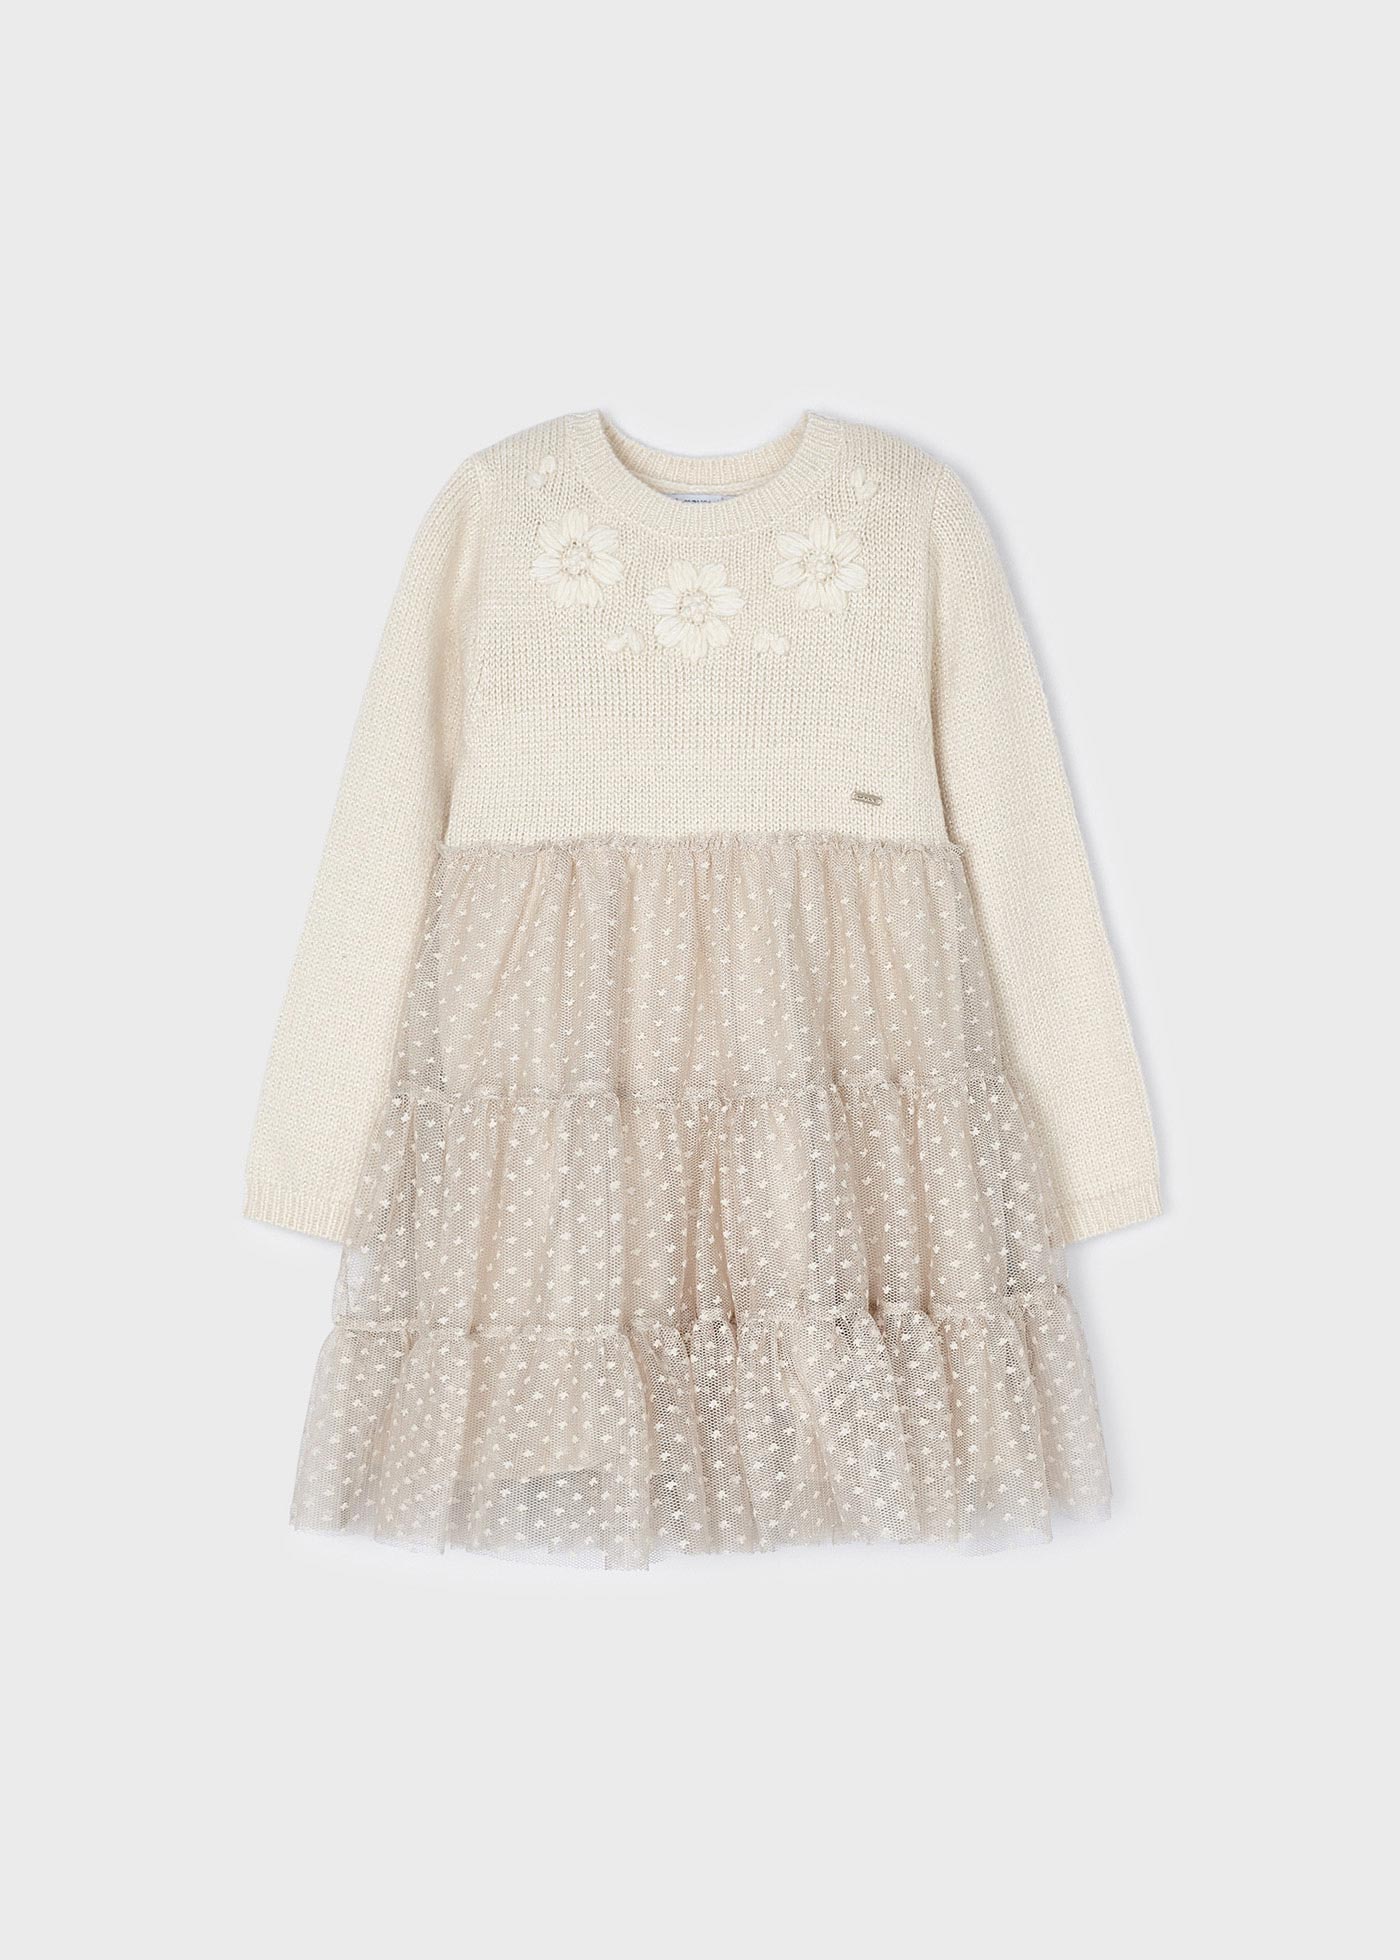 Vestido combinado tricot ecofriends Bebé niña MAYORAL 2861 - Mometti  Infantil